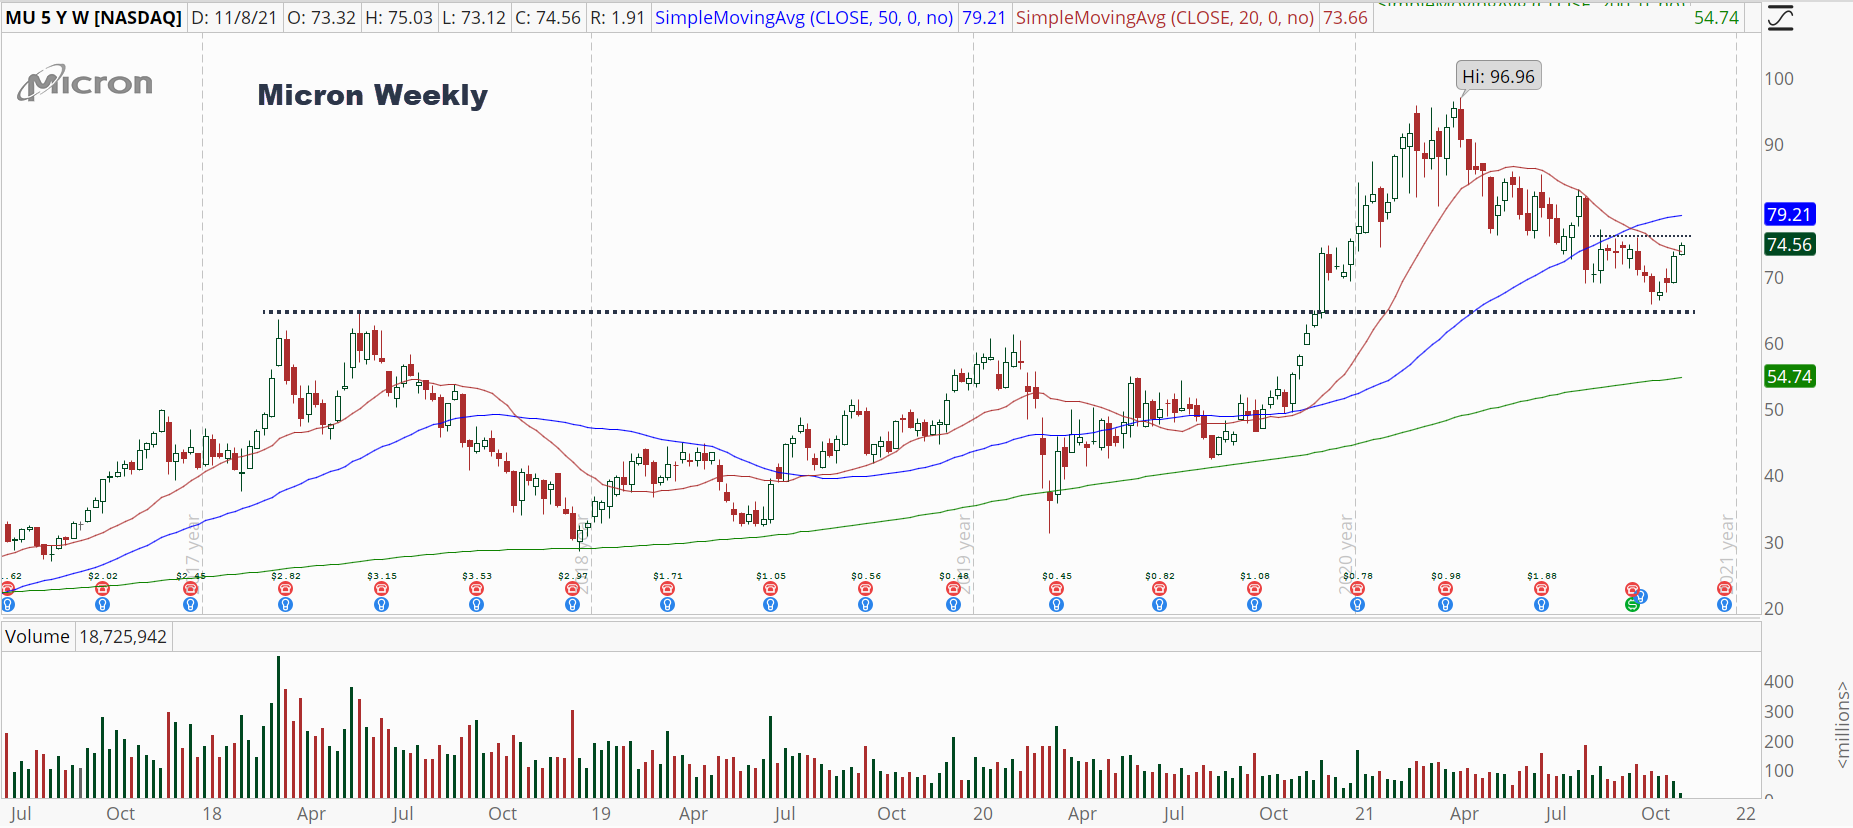 Micron (MU) weekly stock chart with bullish reversal attempt.